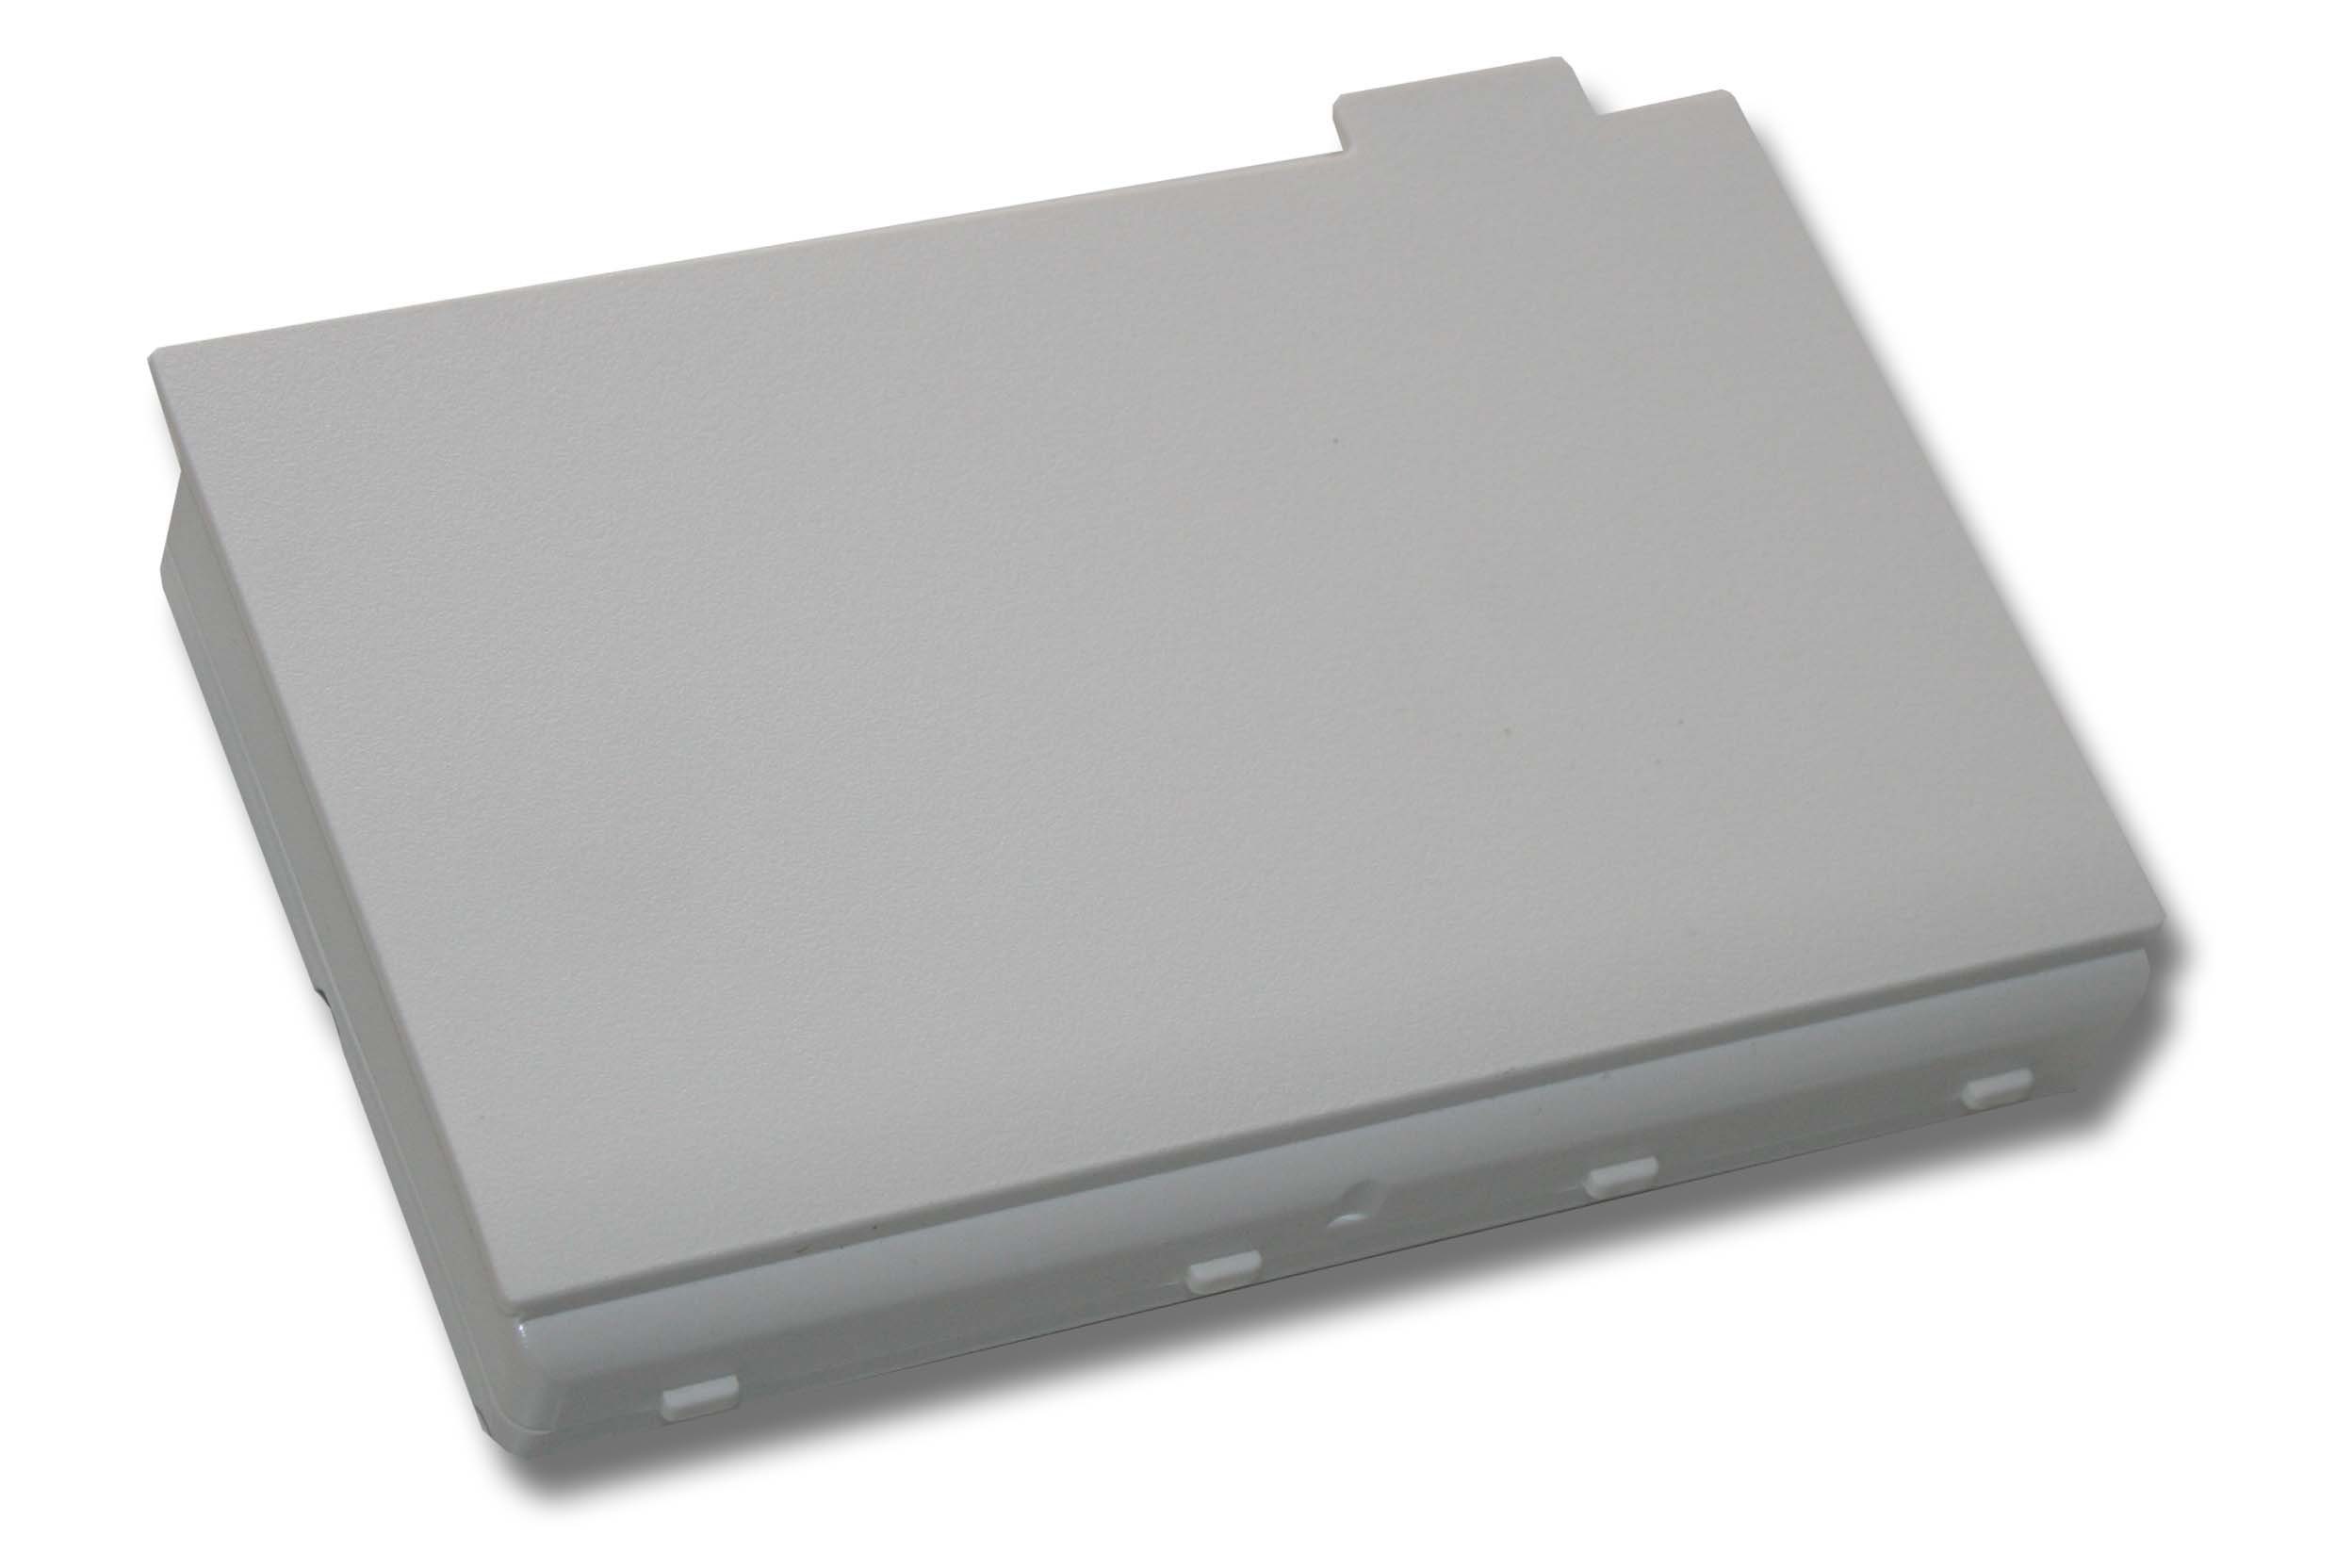 mit Laptop-Akku kompatibel Xi2550 Amilo Fujitsu (11,1 4400 mAh Pi3525, Pi3450, Siemens Li-Ion V) PI3540, vhbw